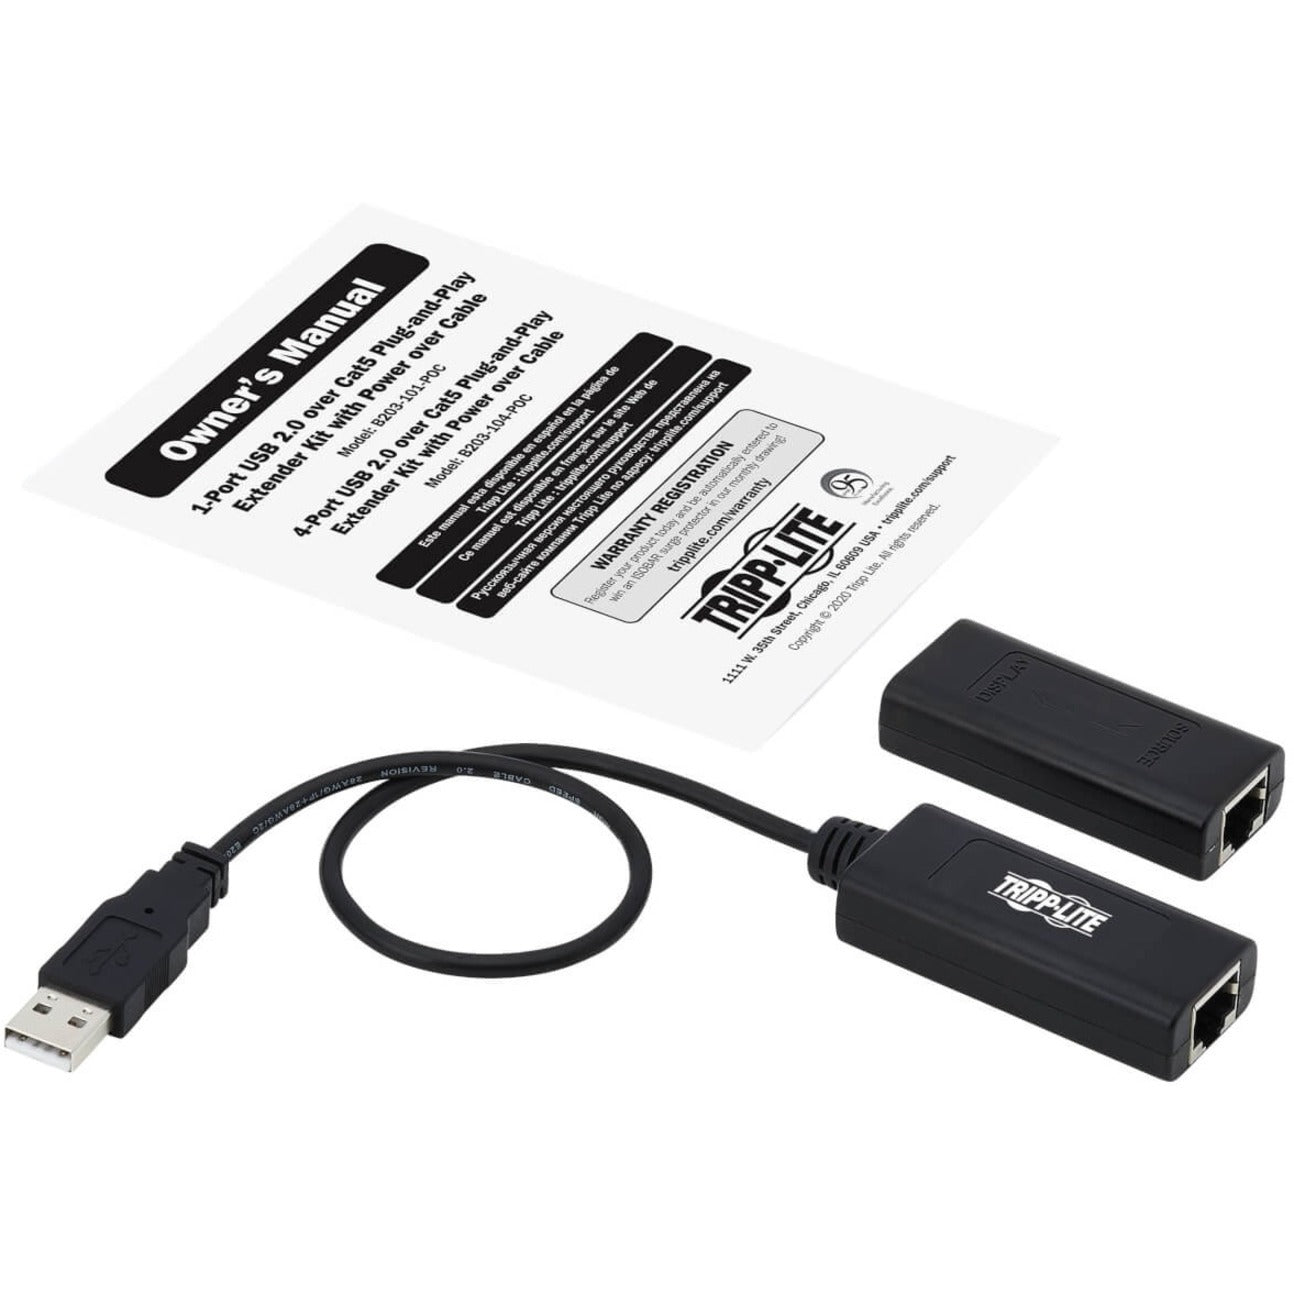 Tripp Lite B203-101-POC Video Extender Transmitter/Receiver, Full HD 1080p, 164 ft Range, USB CAT5/CAT6 Extender Kit